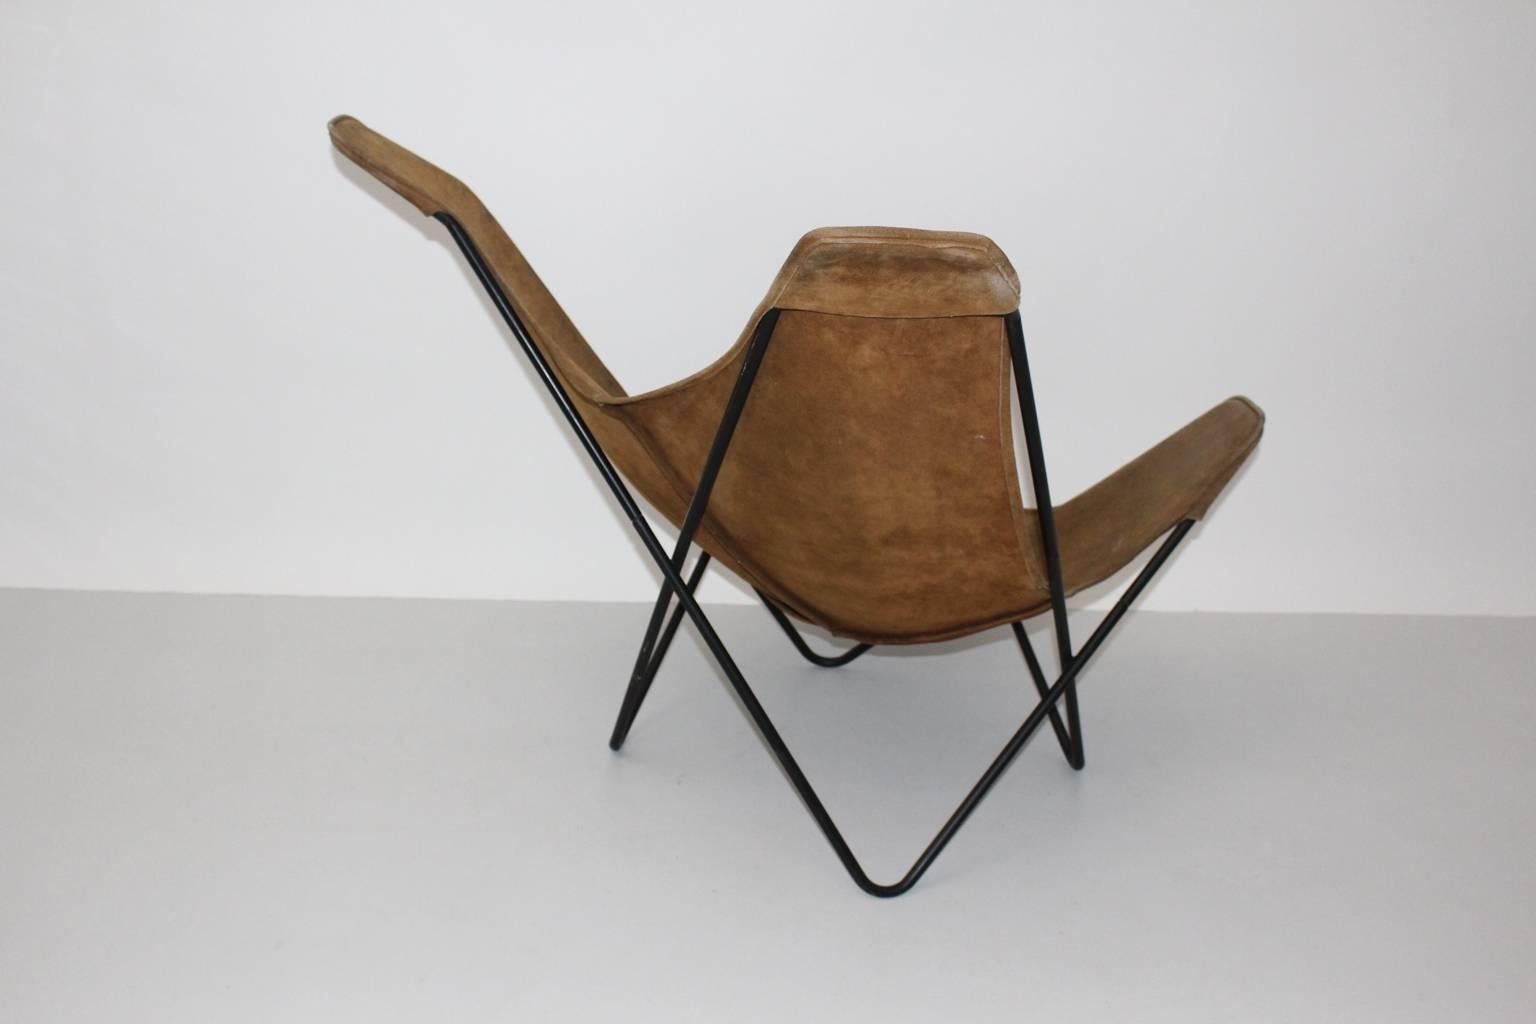 Steel Brown Butterfly Chair by Jorge Ferrari-Hardoy Juan Kurchann Antonio Bonet, 1938